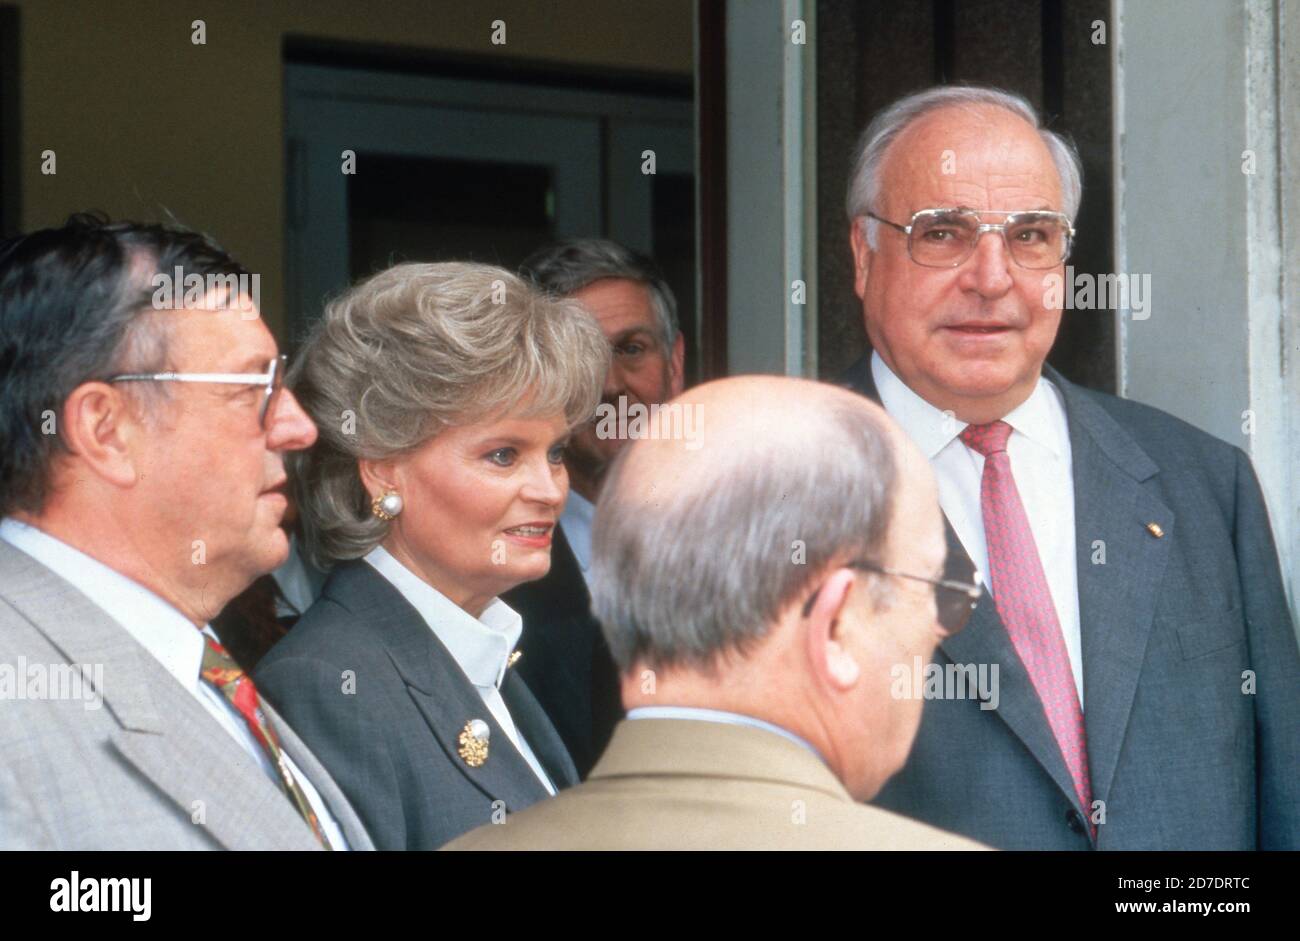 Helmut Kohl mit Ehefrau Hannelore beim Urnengang im ihrem Wahllokal bei der Europawahl in Ludwigshafen Oggersheim, Deutschland  1994. Stock Photo